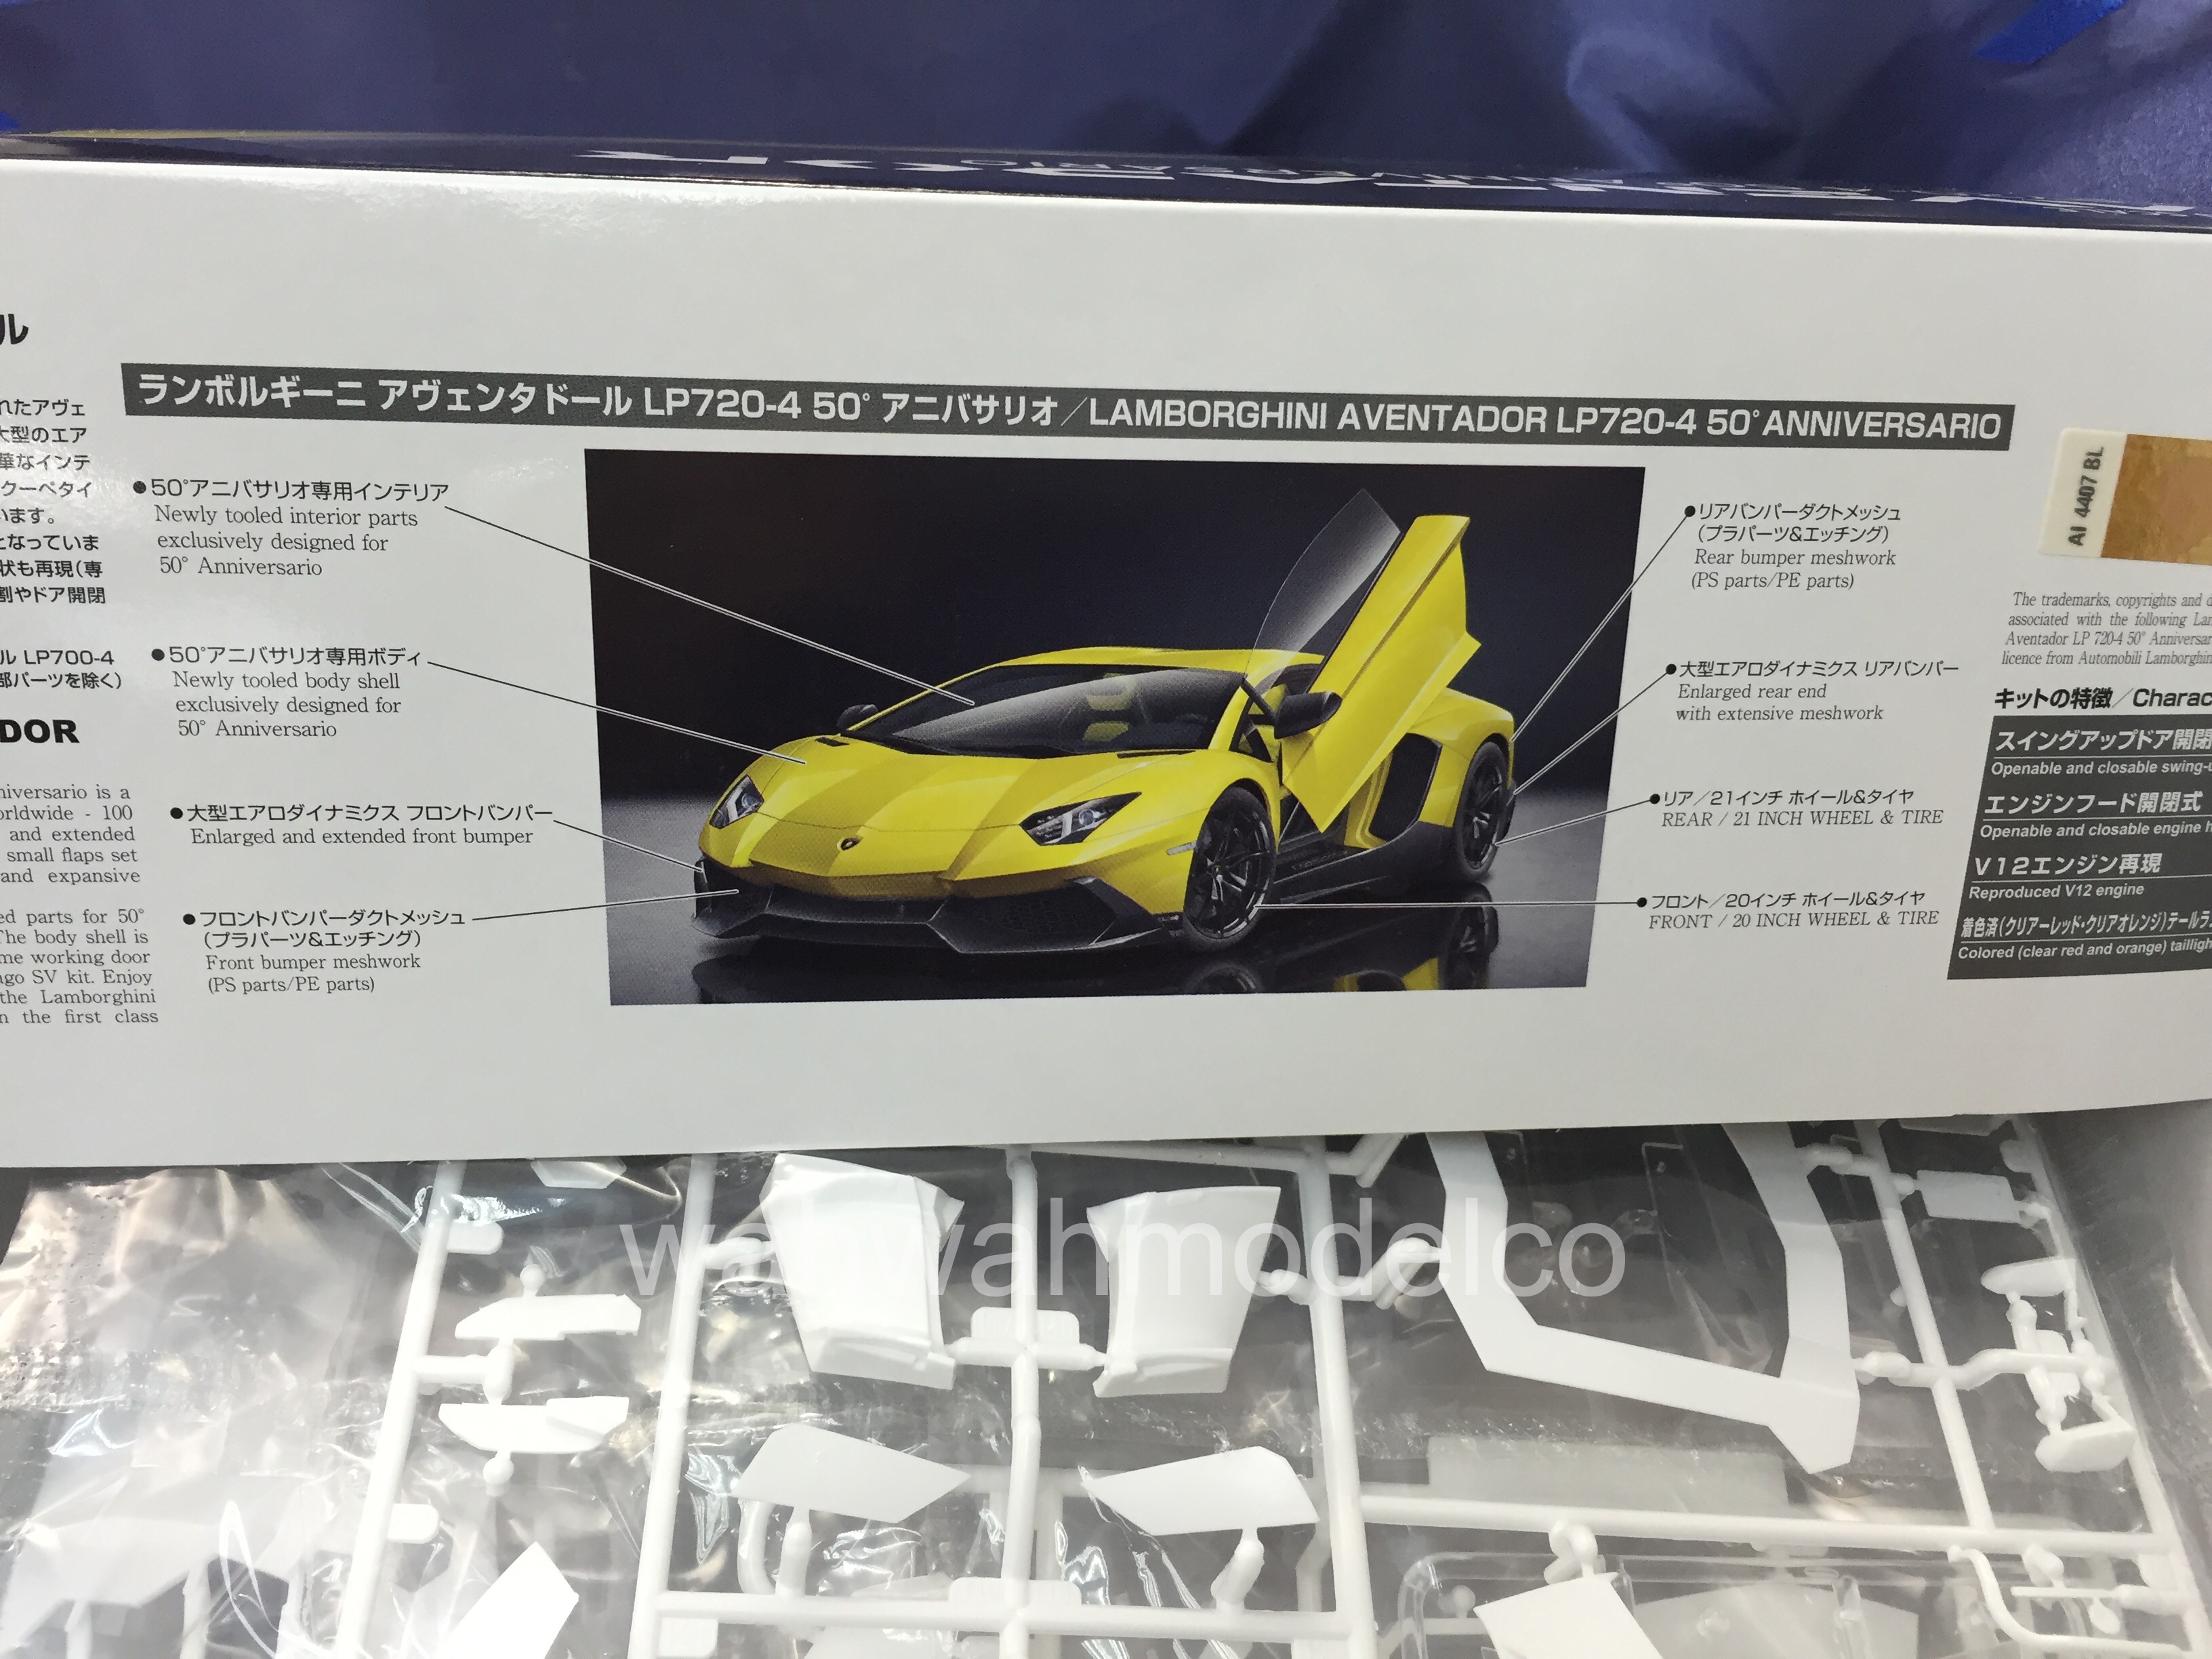 Hobby Design 1/24 Aventador LP700-4 PE Detail set for Aoshima 